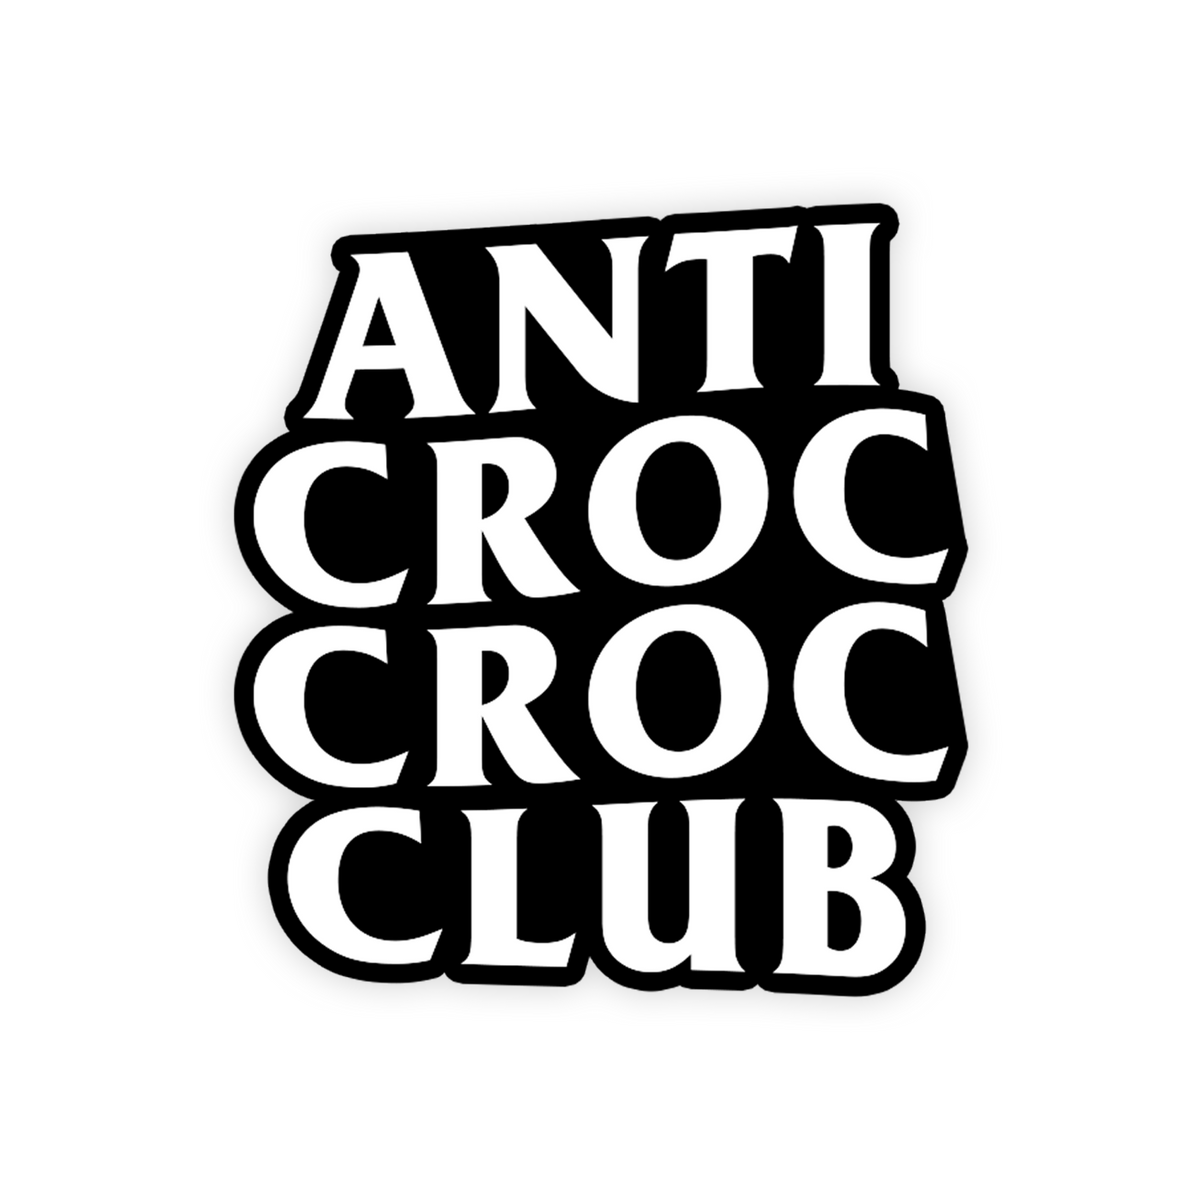 ACCC – Anti Croc Croc Club Jibbit – flock